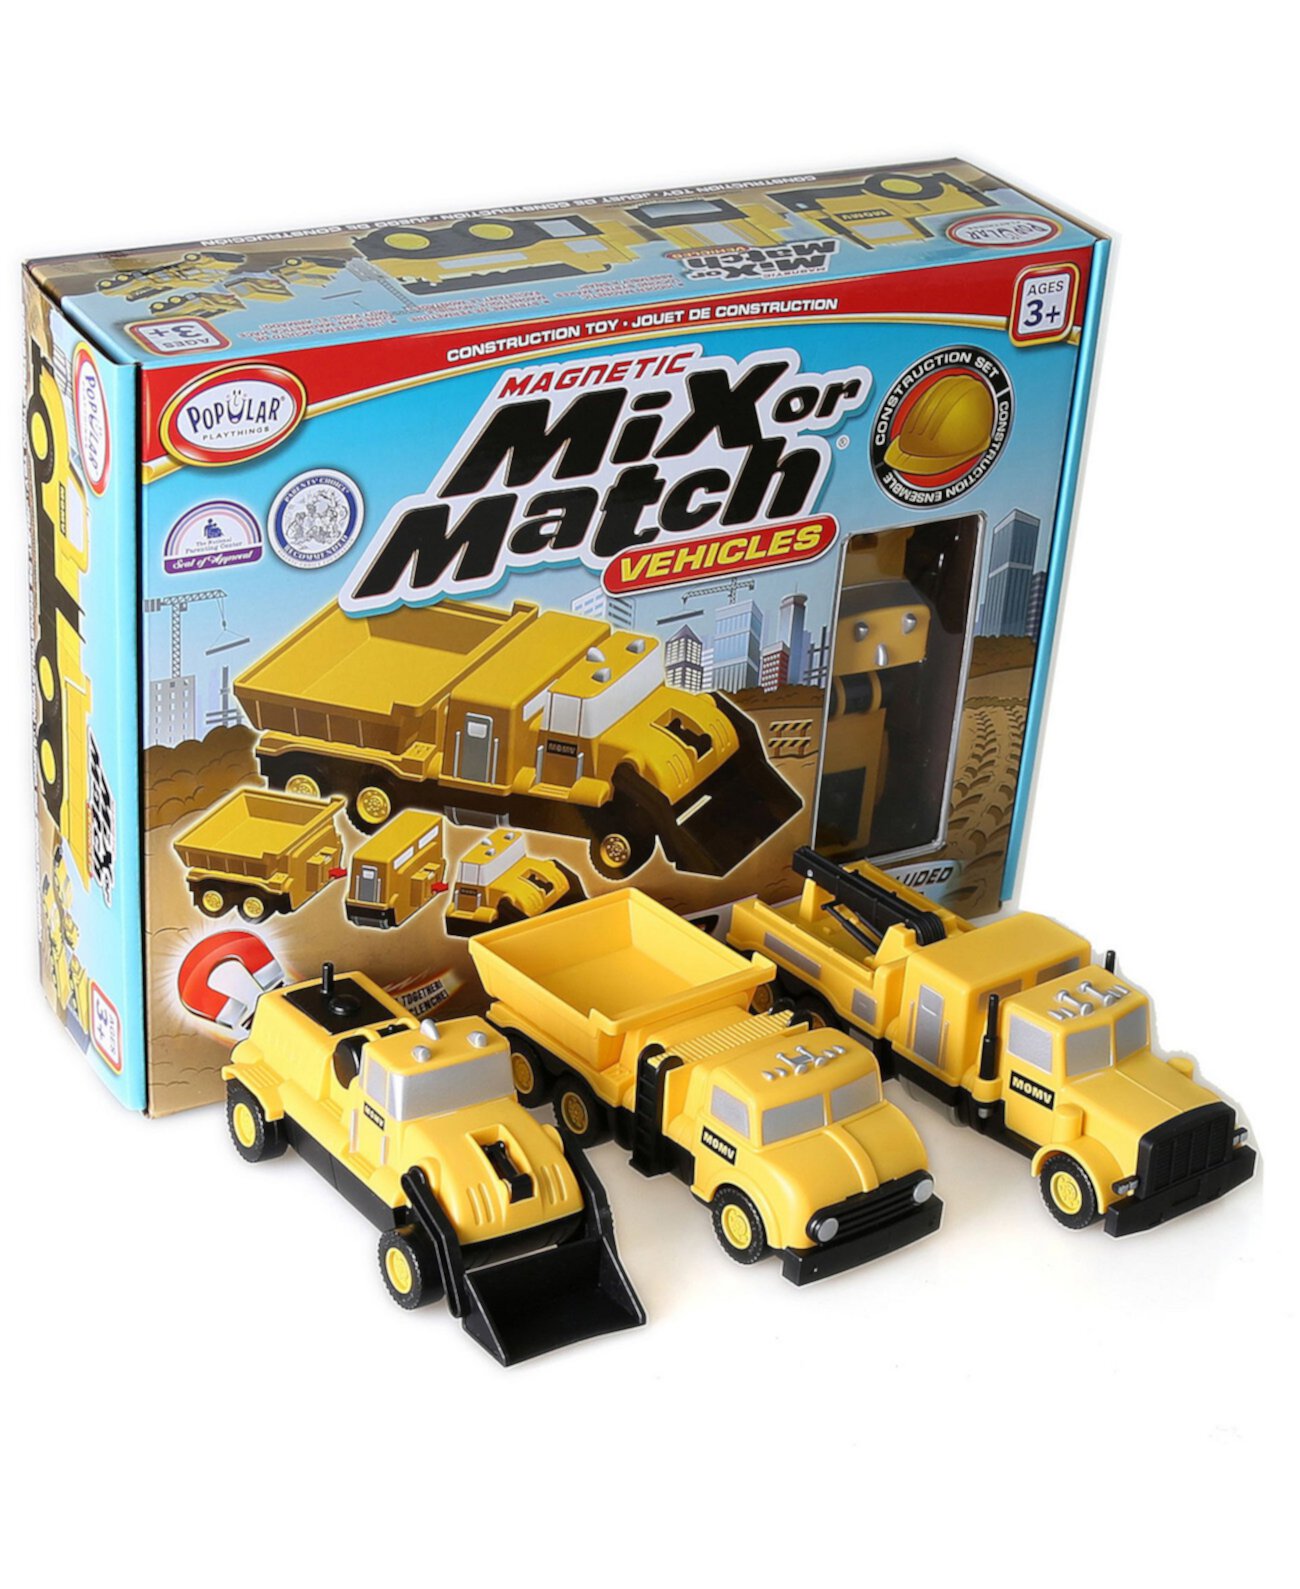 Magnetic Mix или Match Транспортные средства - Строительство Popular Playthings